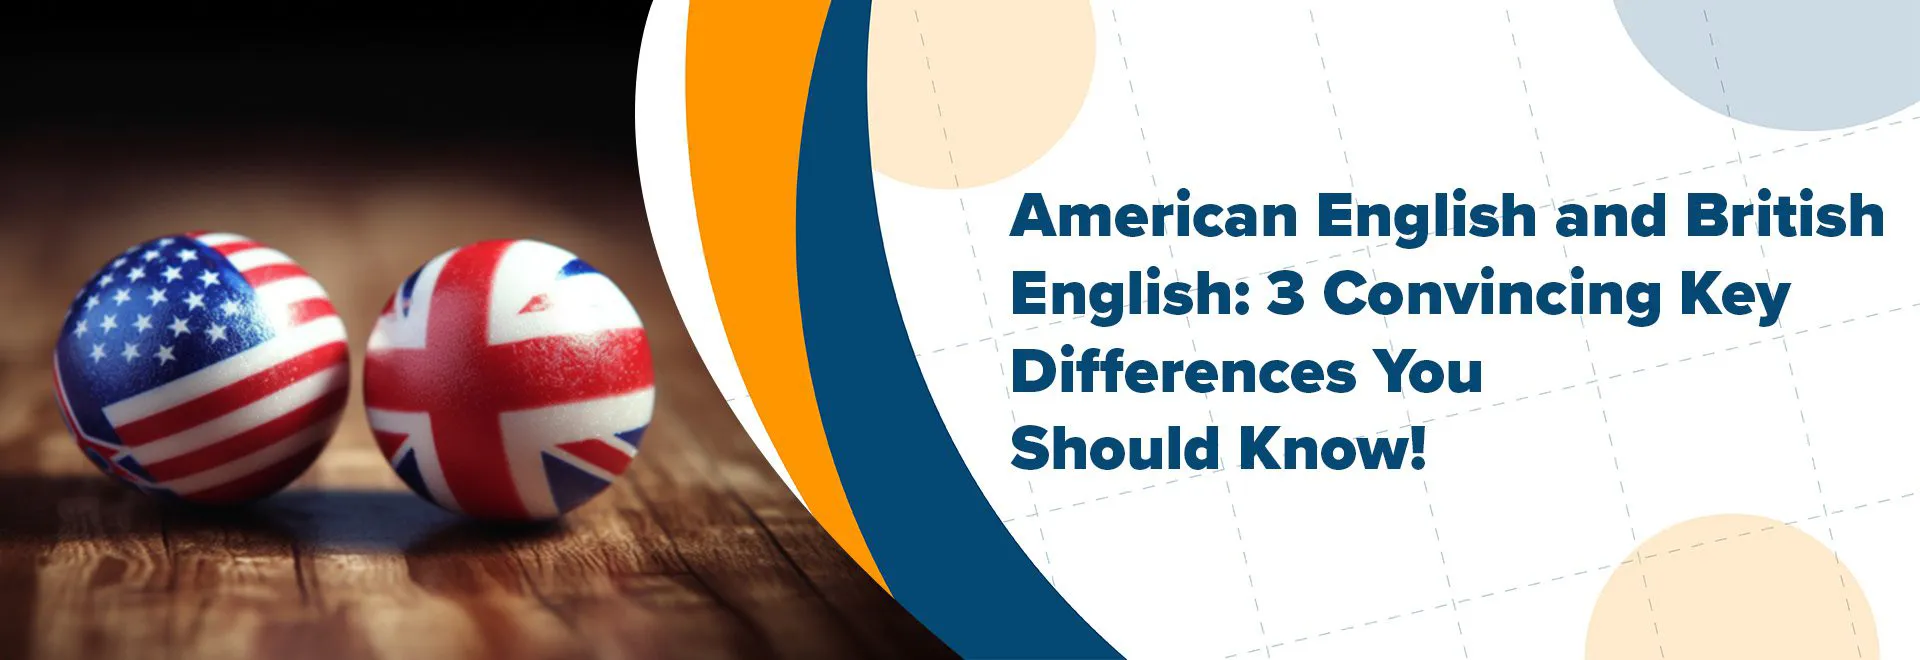 الإنجليزية الأمريكية والإنجليزية البريطانية: 3 اختلافات رئيسية مقنعة تحتاج إلى معرفتها